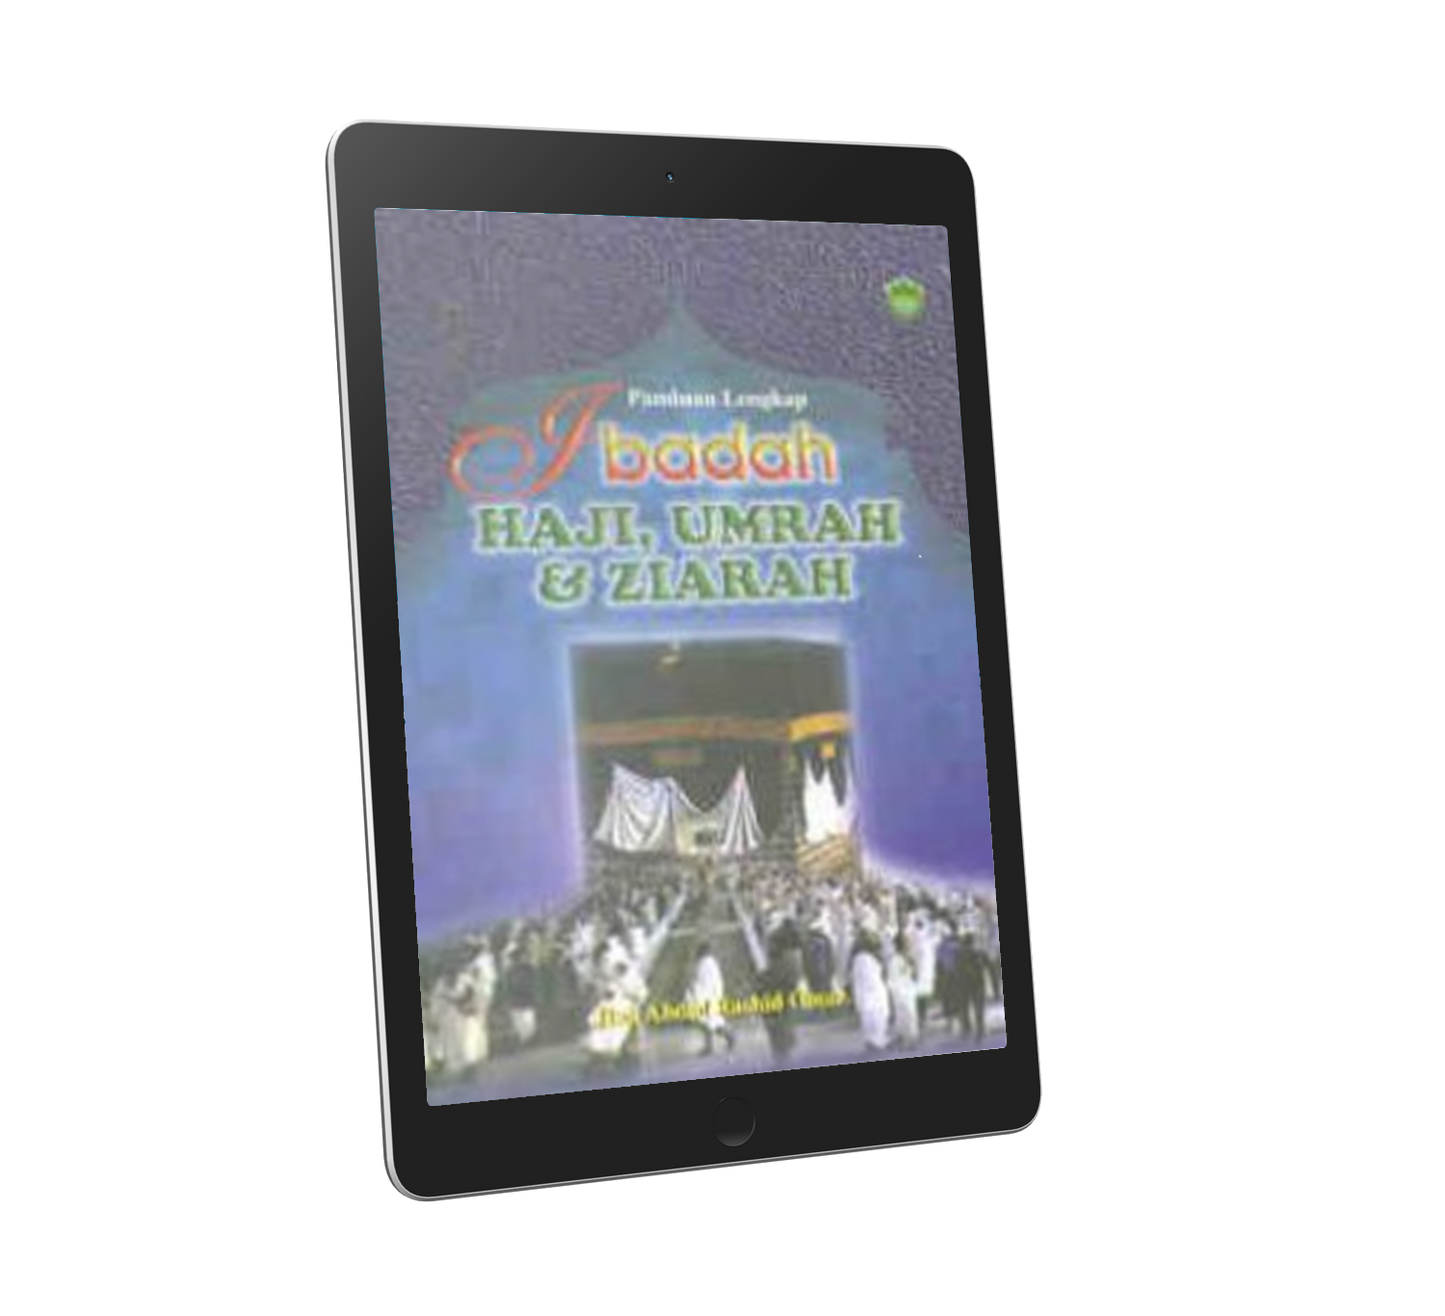 Panduan Lengkap Ibadah Haji, Umrah & Ziarah (sm)